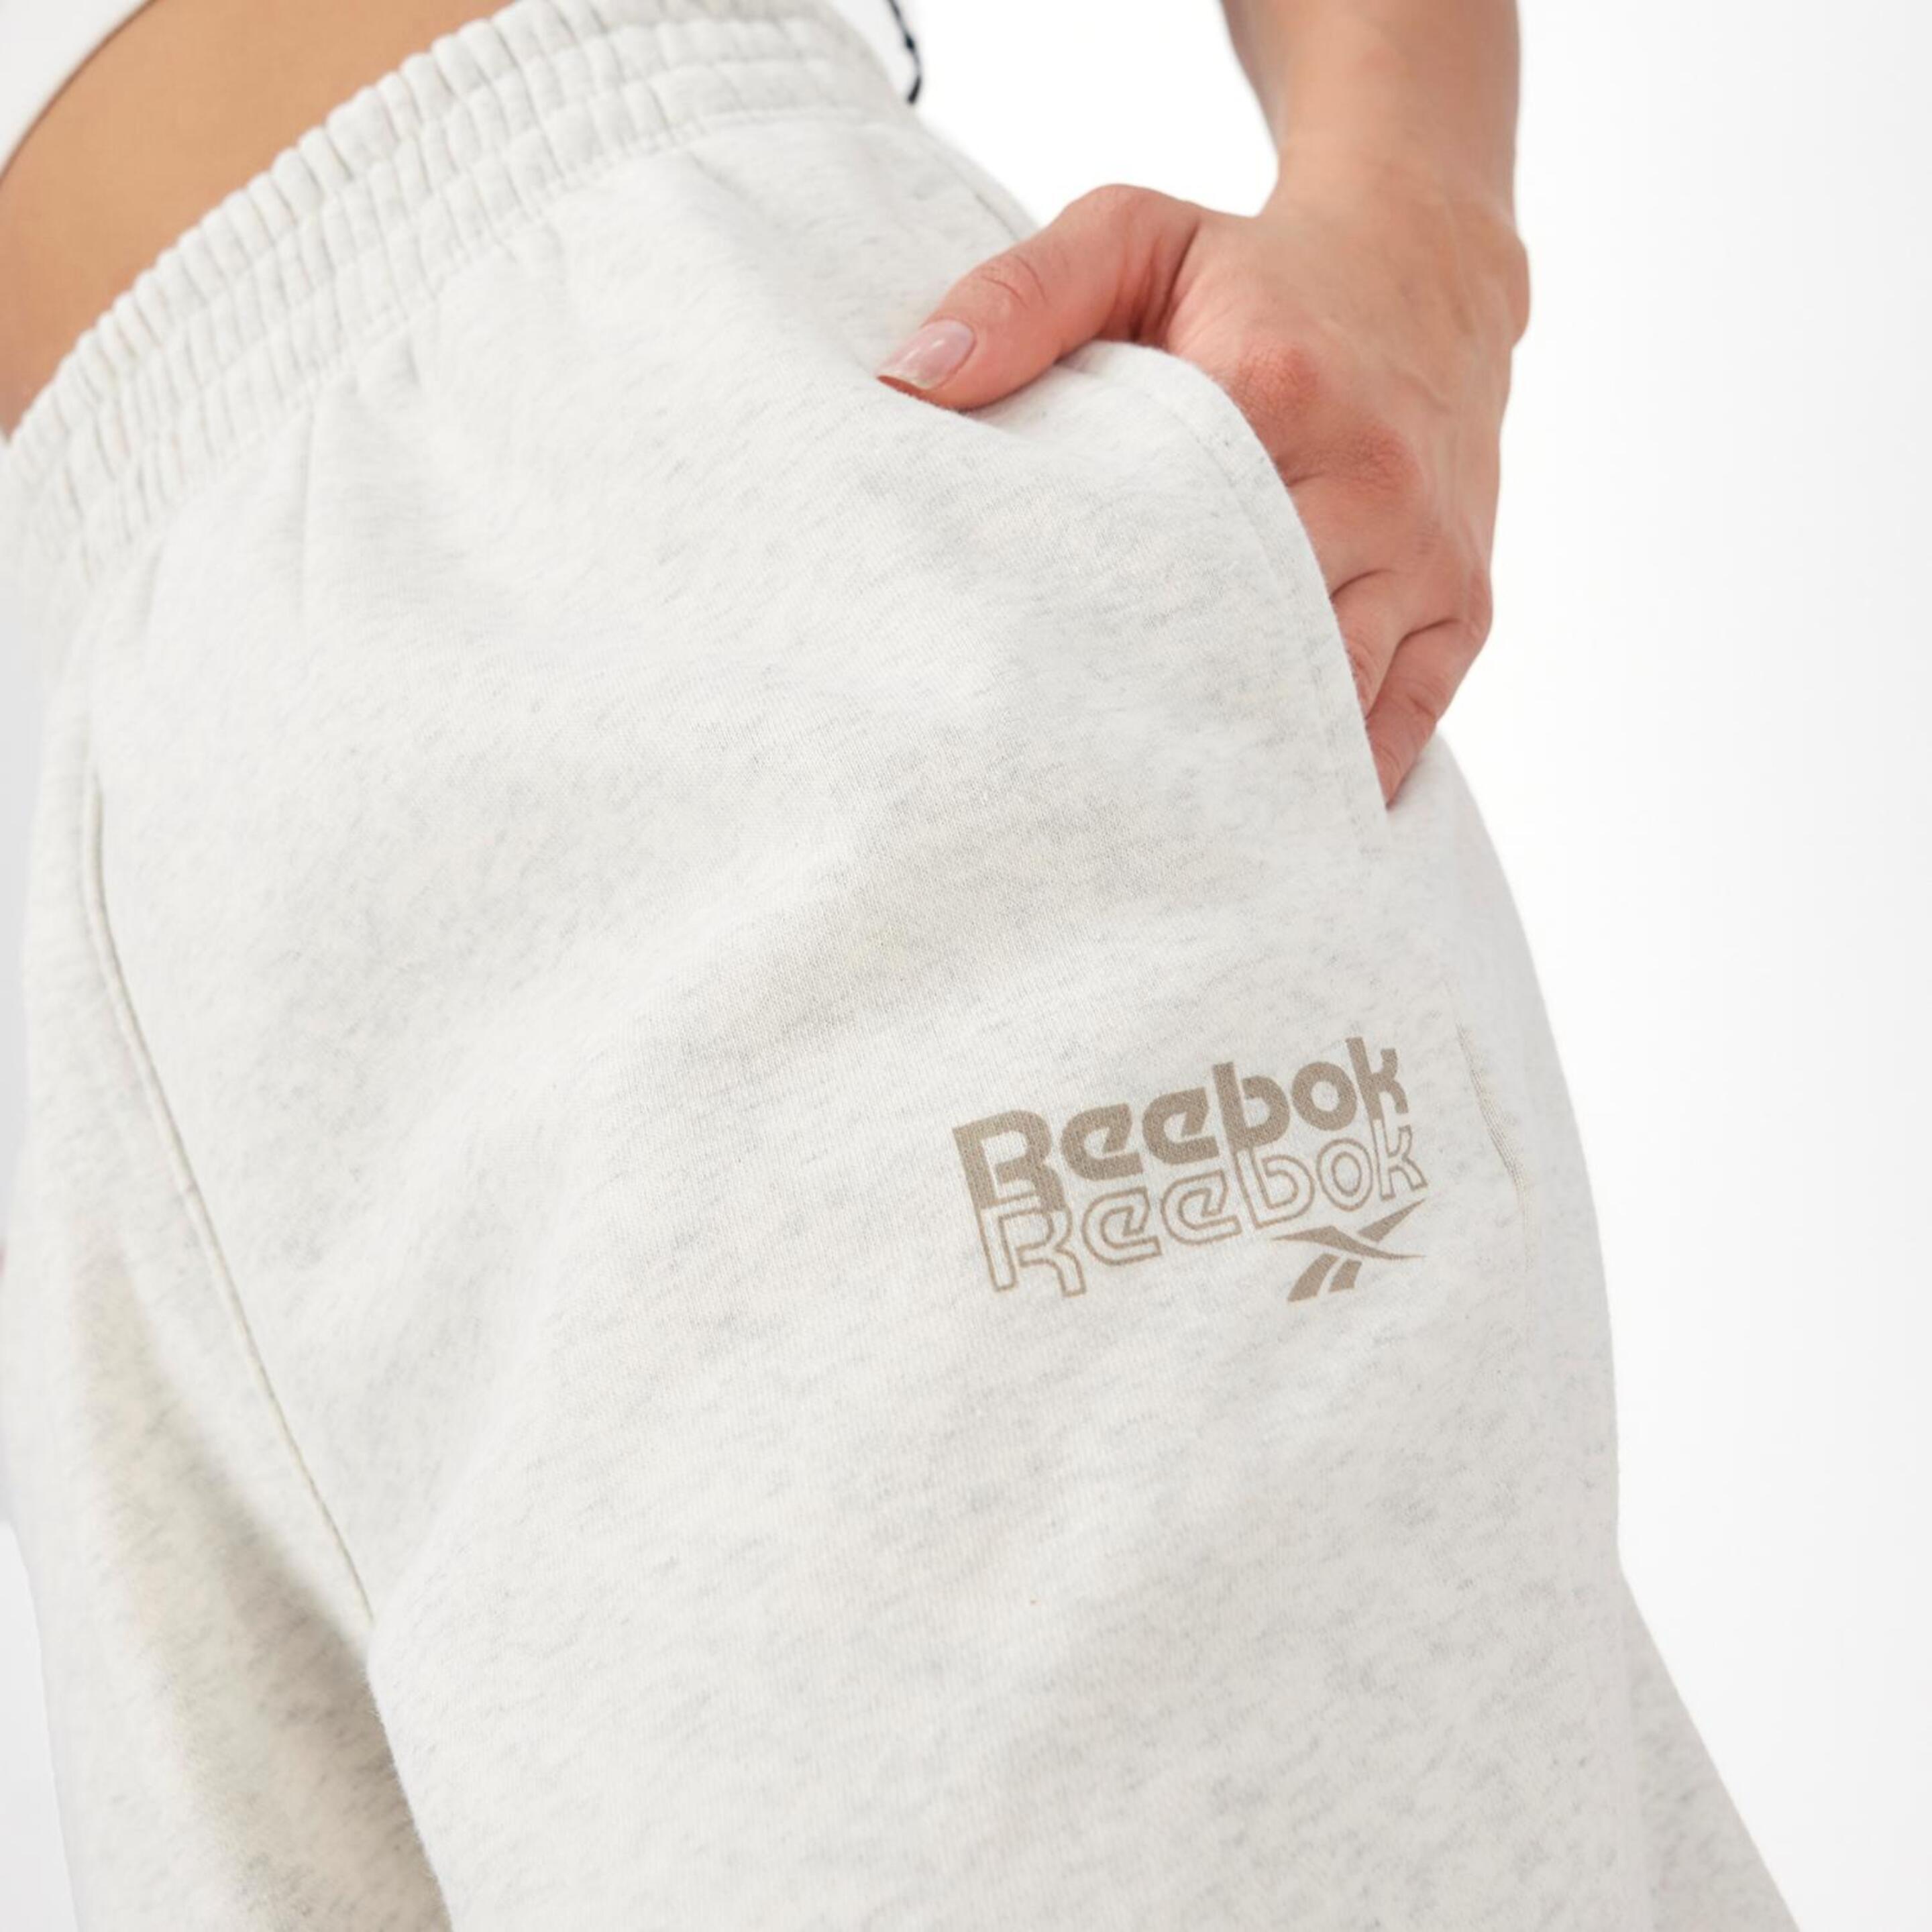 Reebok Rie - Blanco - Pantalón Puño Mujer